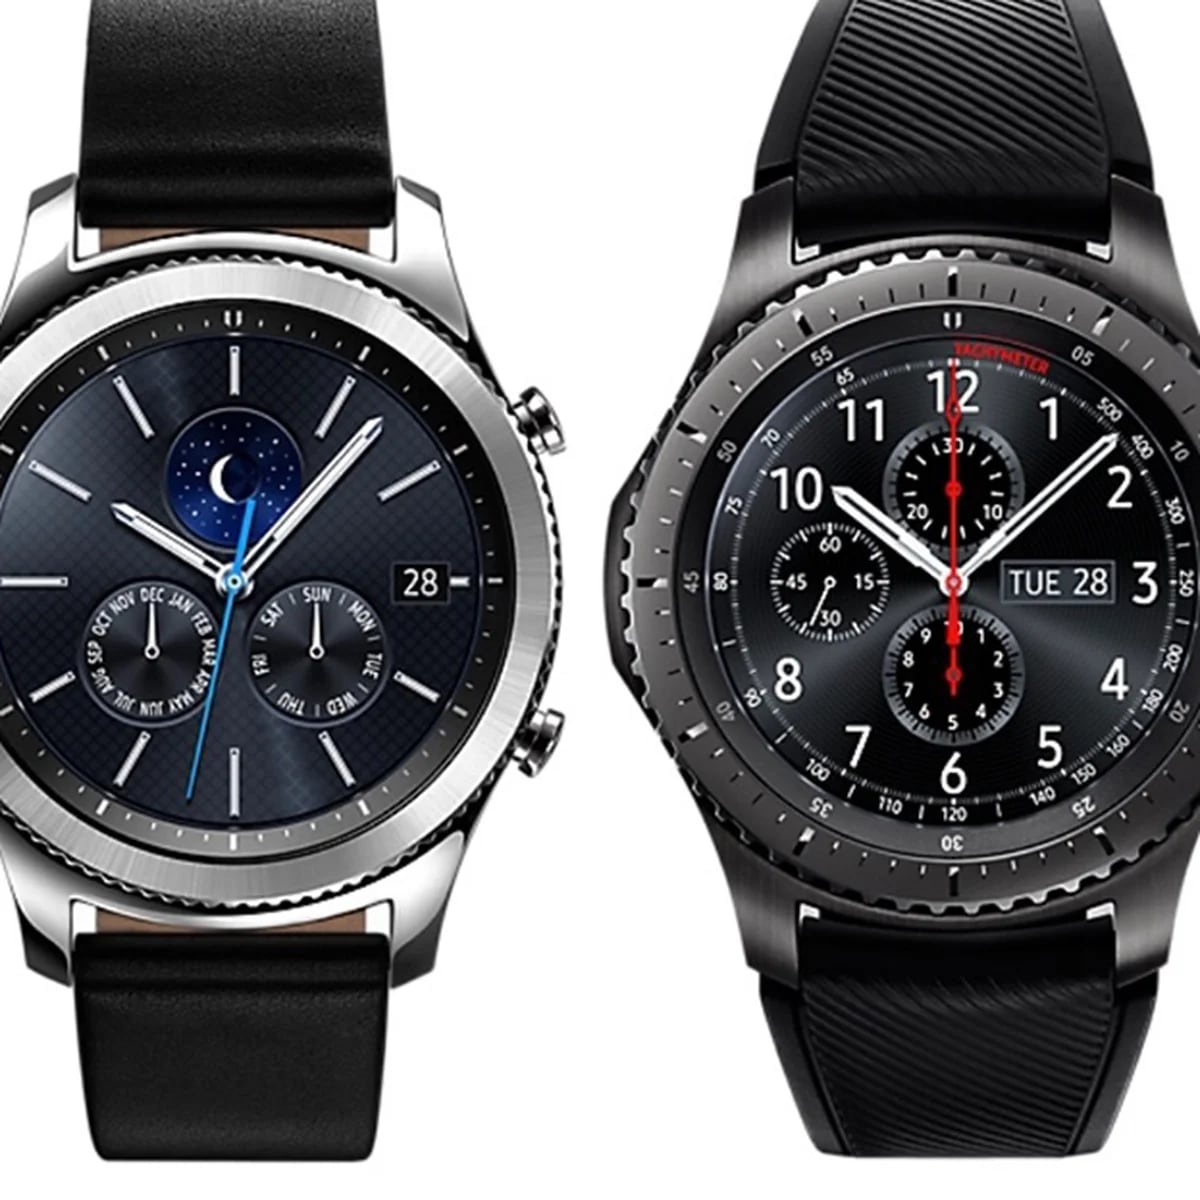 completo del Gear S3, el nuevo reloj inteligente de Samsung - Infobae